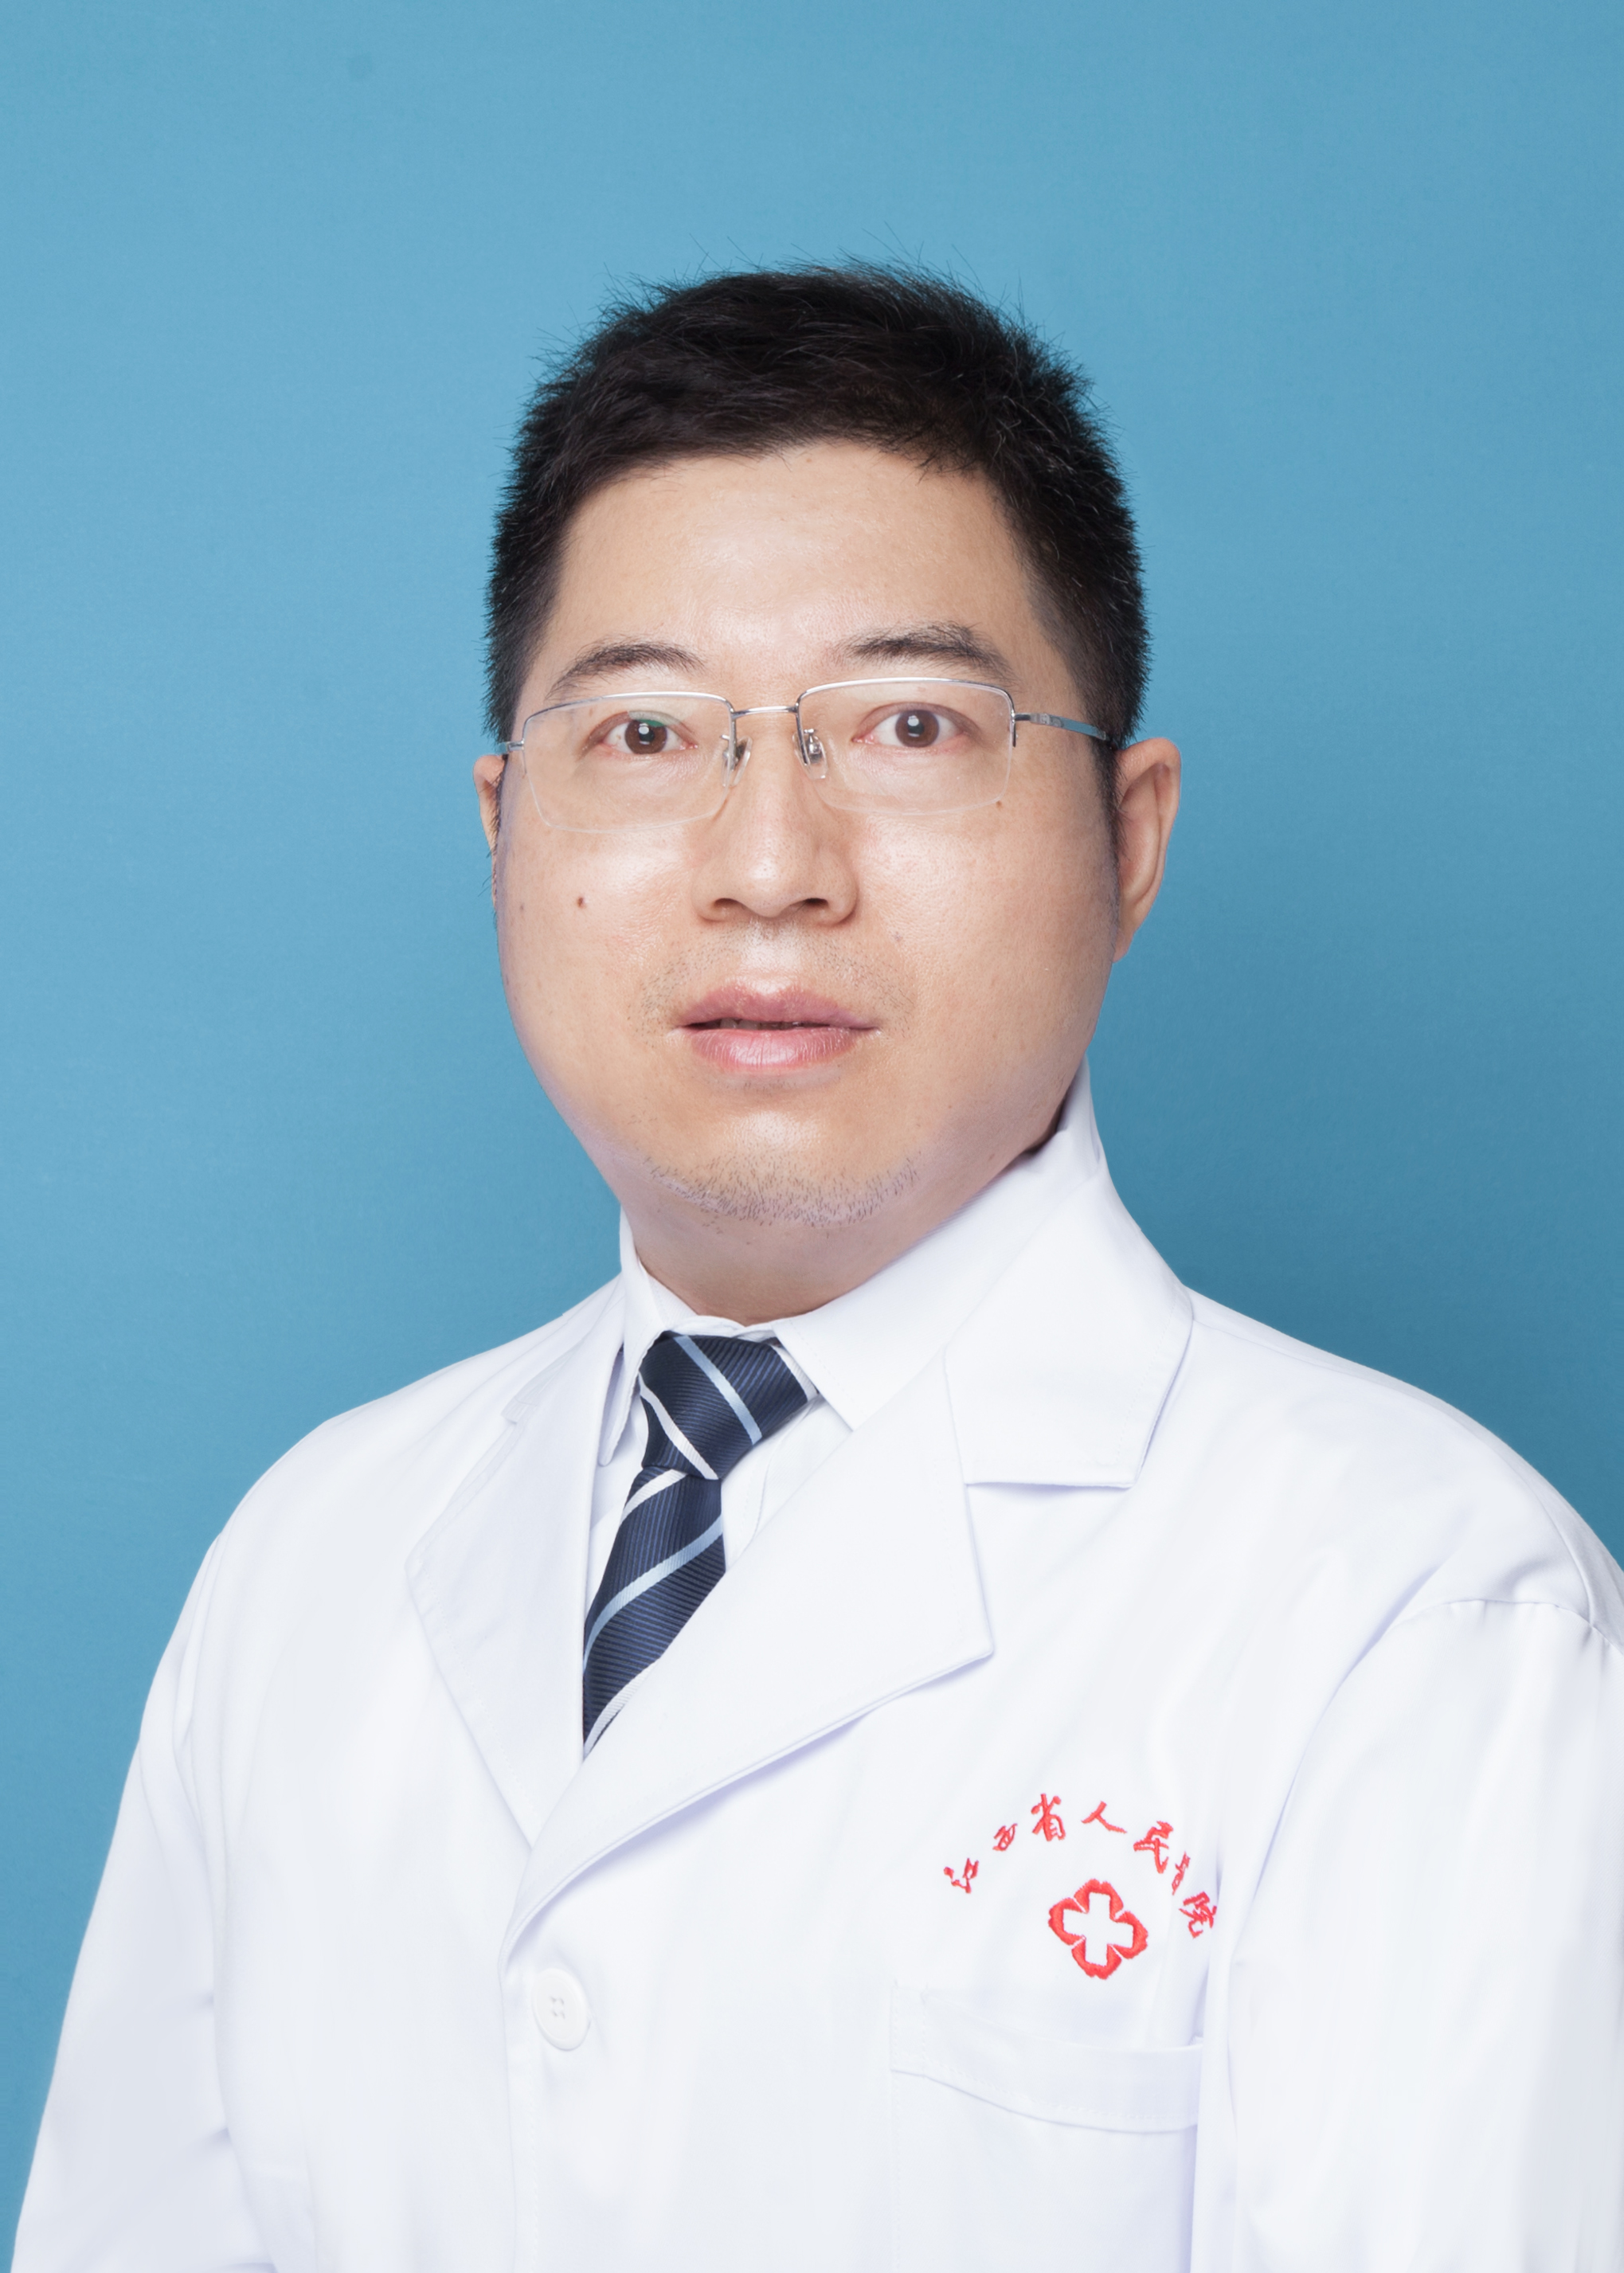 江西省人民医院开展肛肠镜检查项目